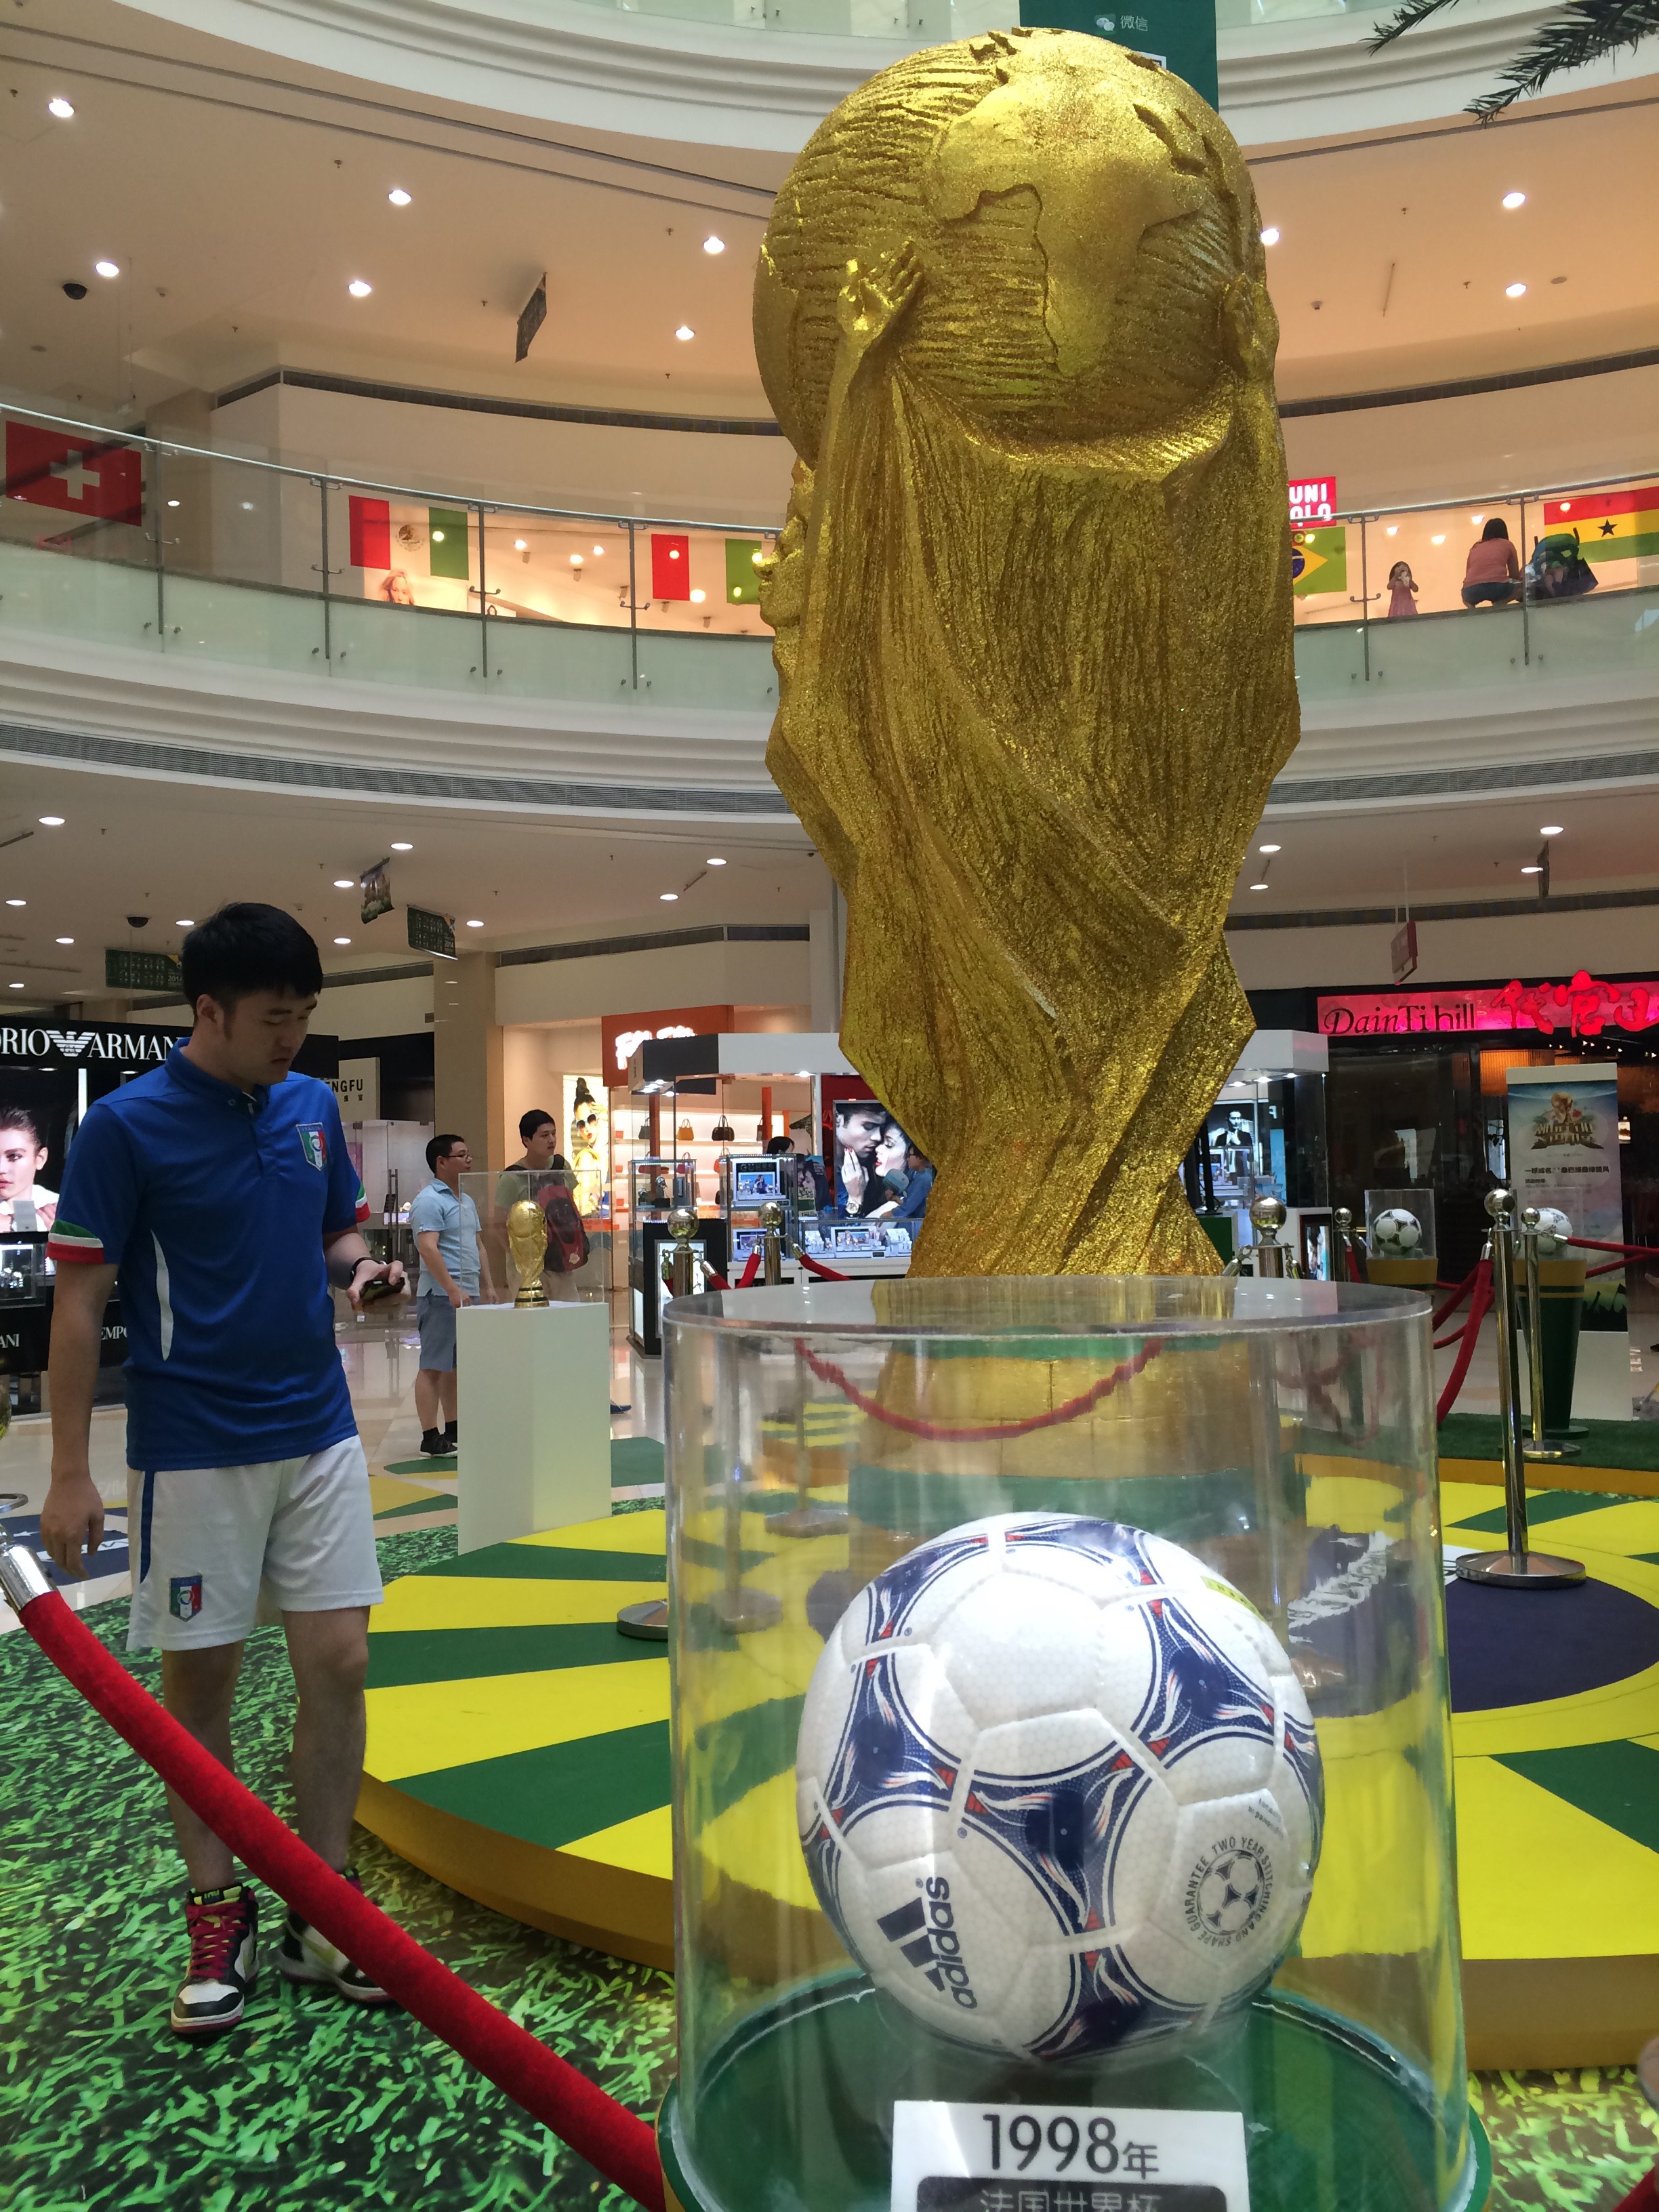 صور متفرقة من مونديال كأس العالم 2014 بالبرازيل